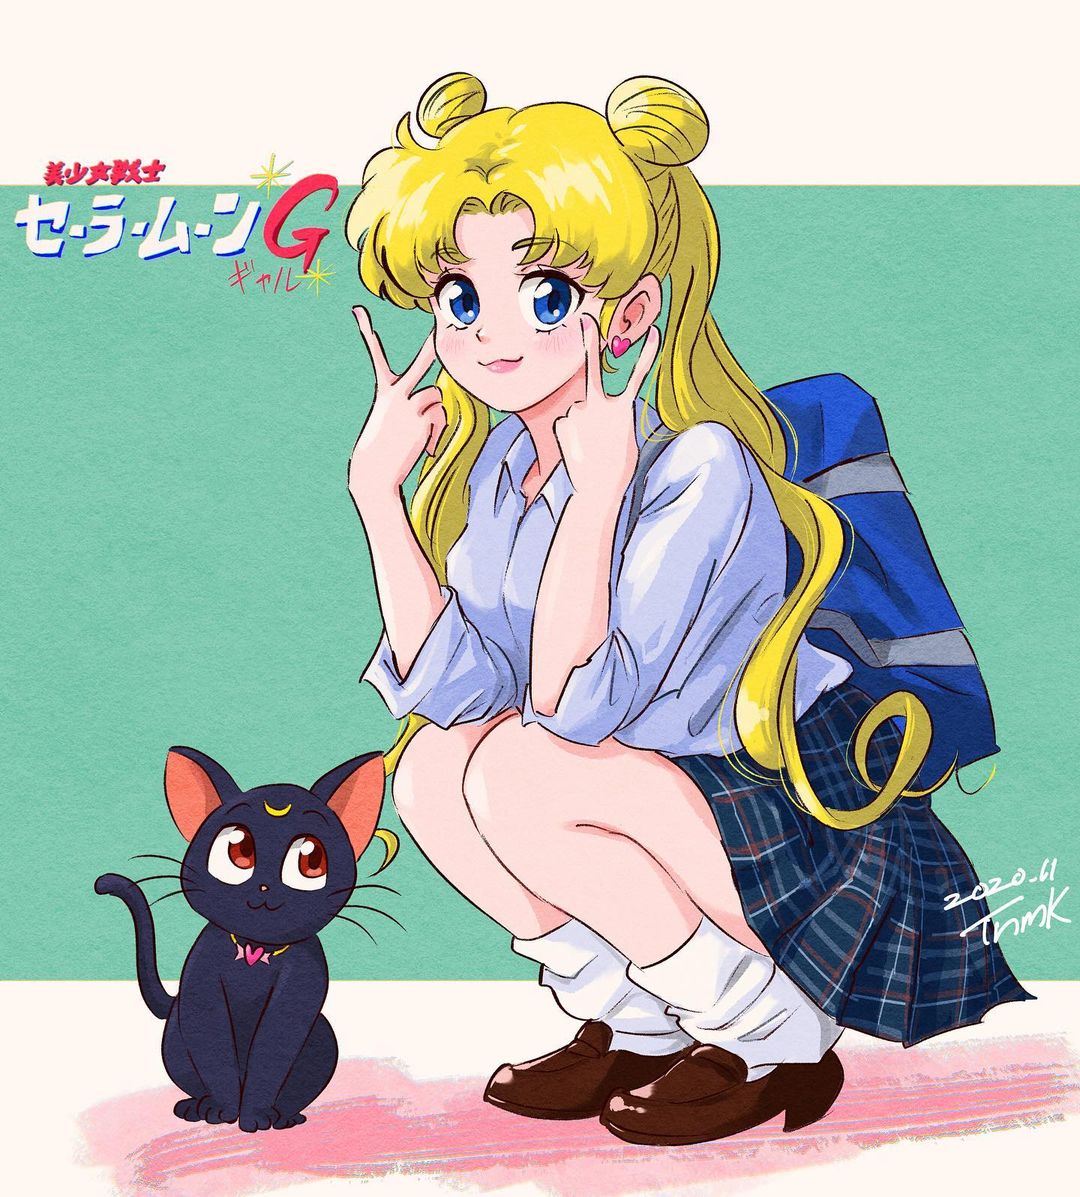 Aproveite! Naruto, Sailor Moon e mais animes estão disponíveis  gratuitamente no  